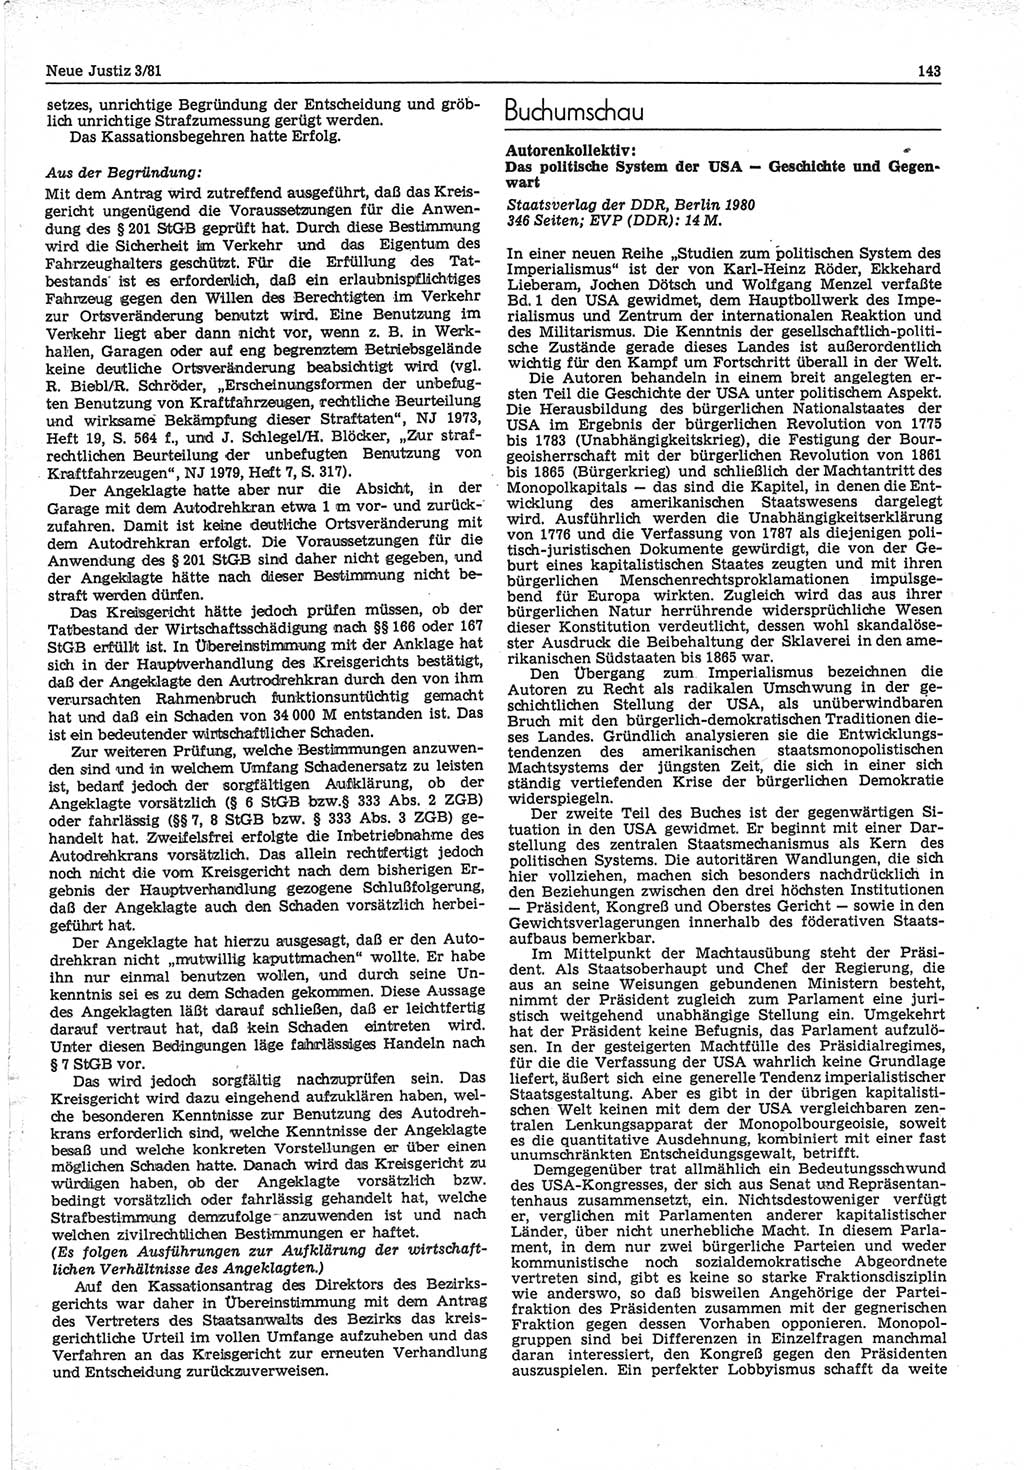 Neue Justiz (NJ), Zeitschrift für sozialistisches Recht und Gesetzlichkeit [Deutsche Demokratische Republik (DDR)], 35. Jahrgang 1981, Seite 143 (NJ DDR 1981, S. 143)